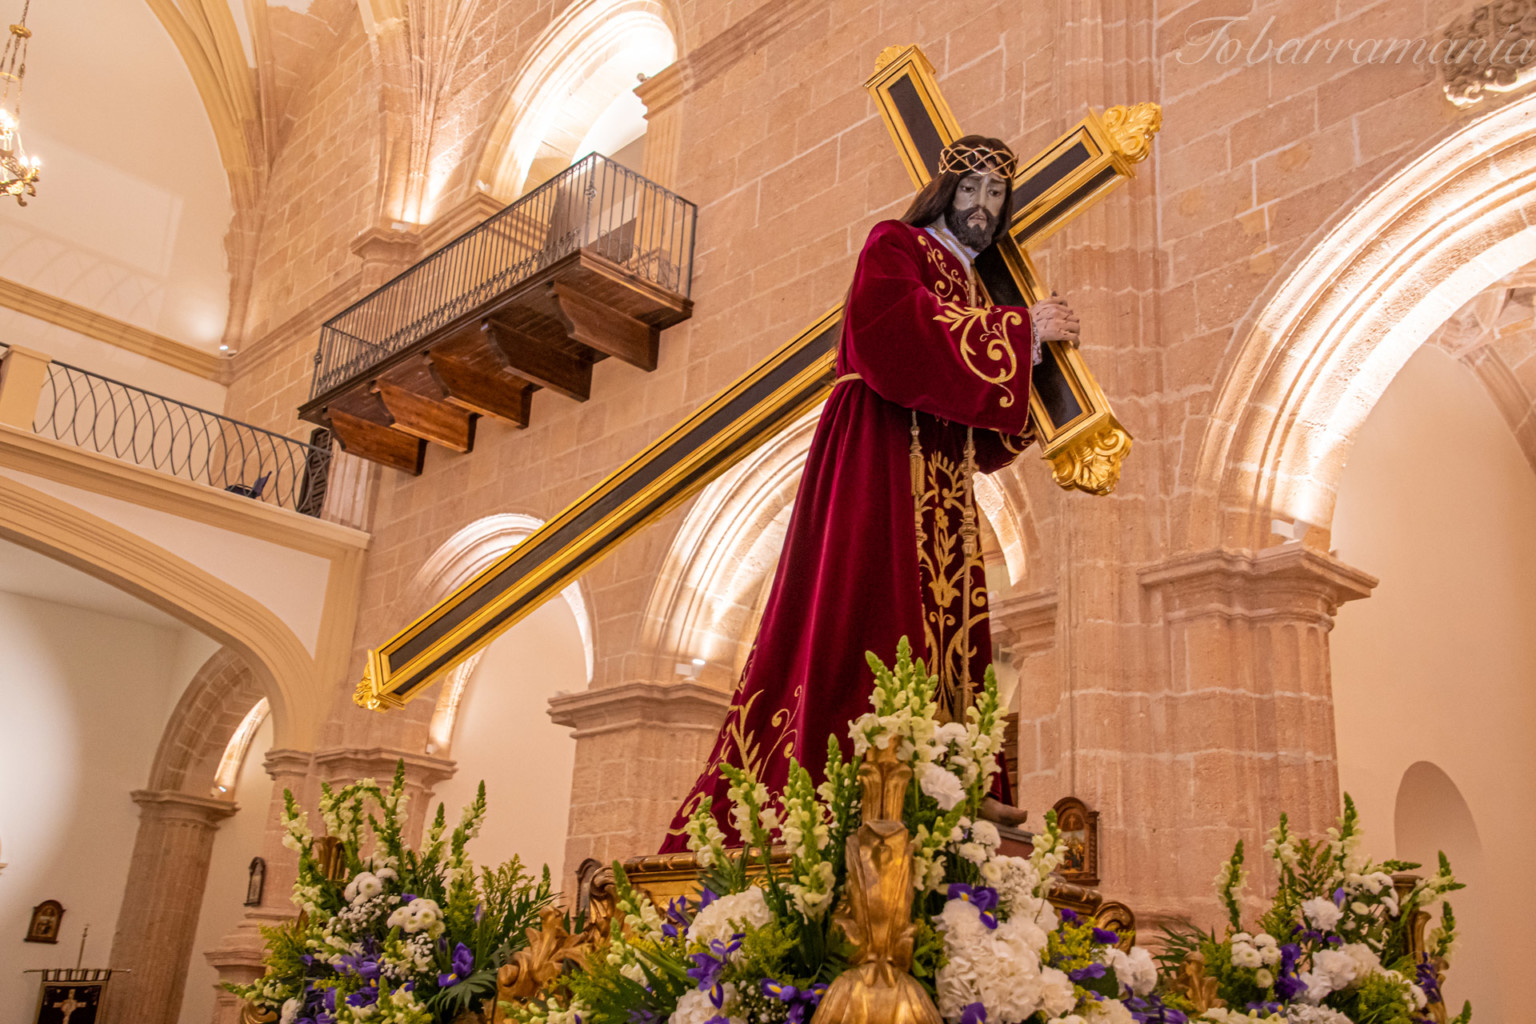 Nuestro Padre Jesus Nazareno en la Iglesia de la Asunción de Tobarra. Viernes Santo 2021. Semana Santa de Tobarra